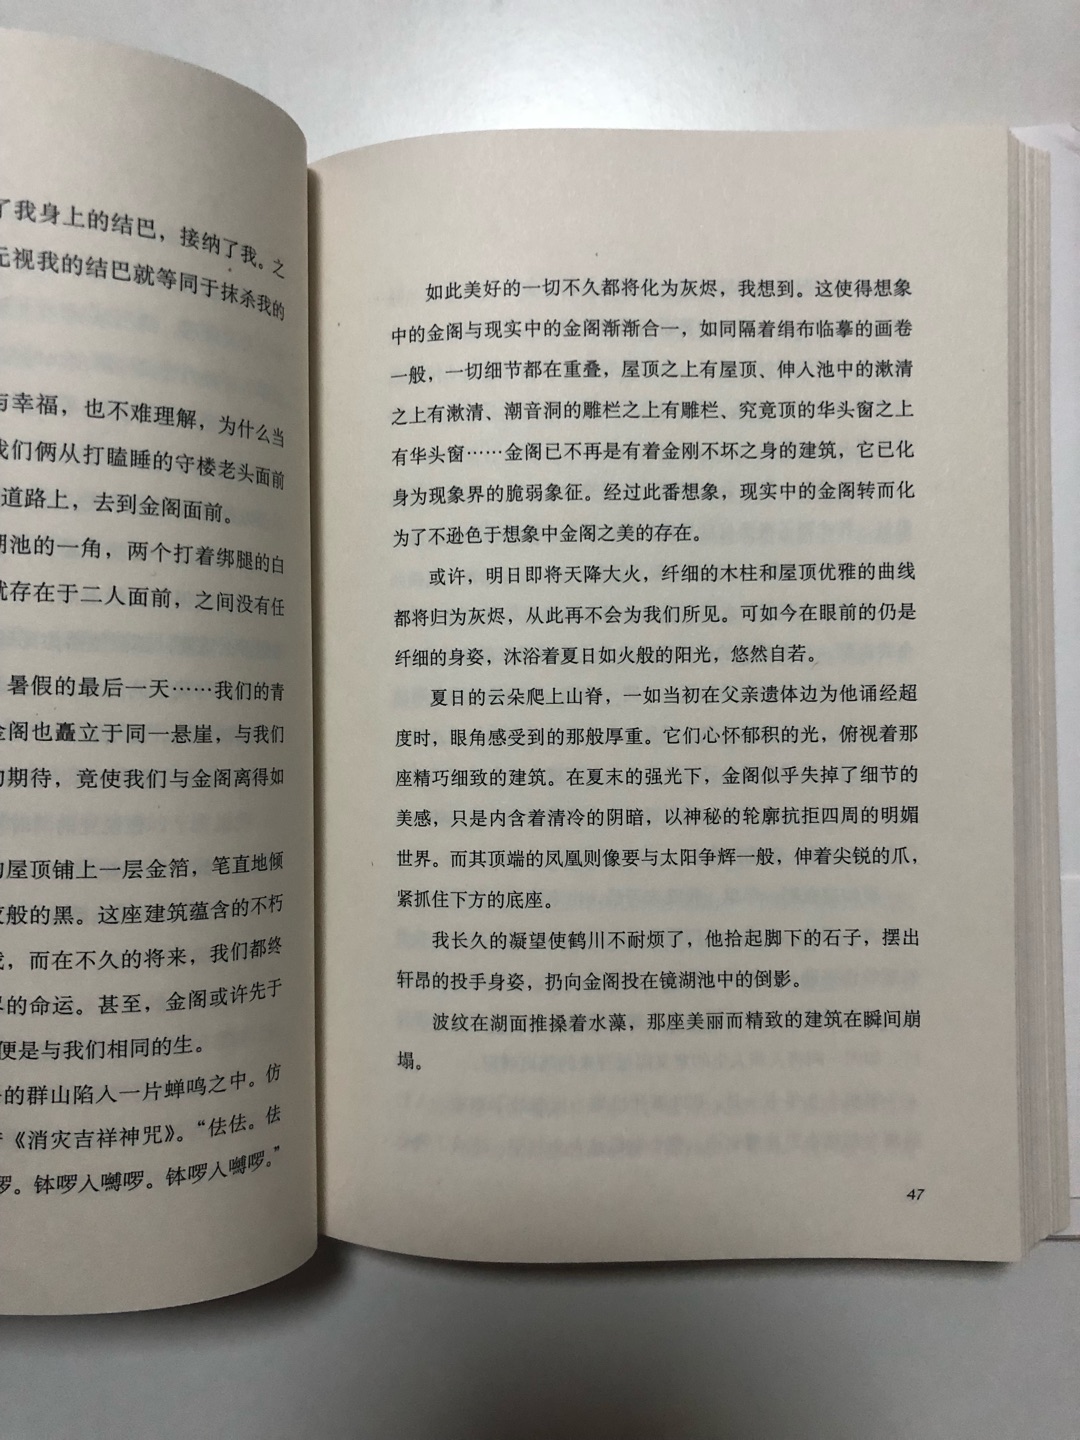 代珂的译本需要翻译的很不错。